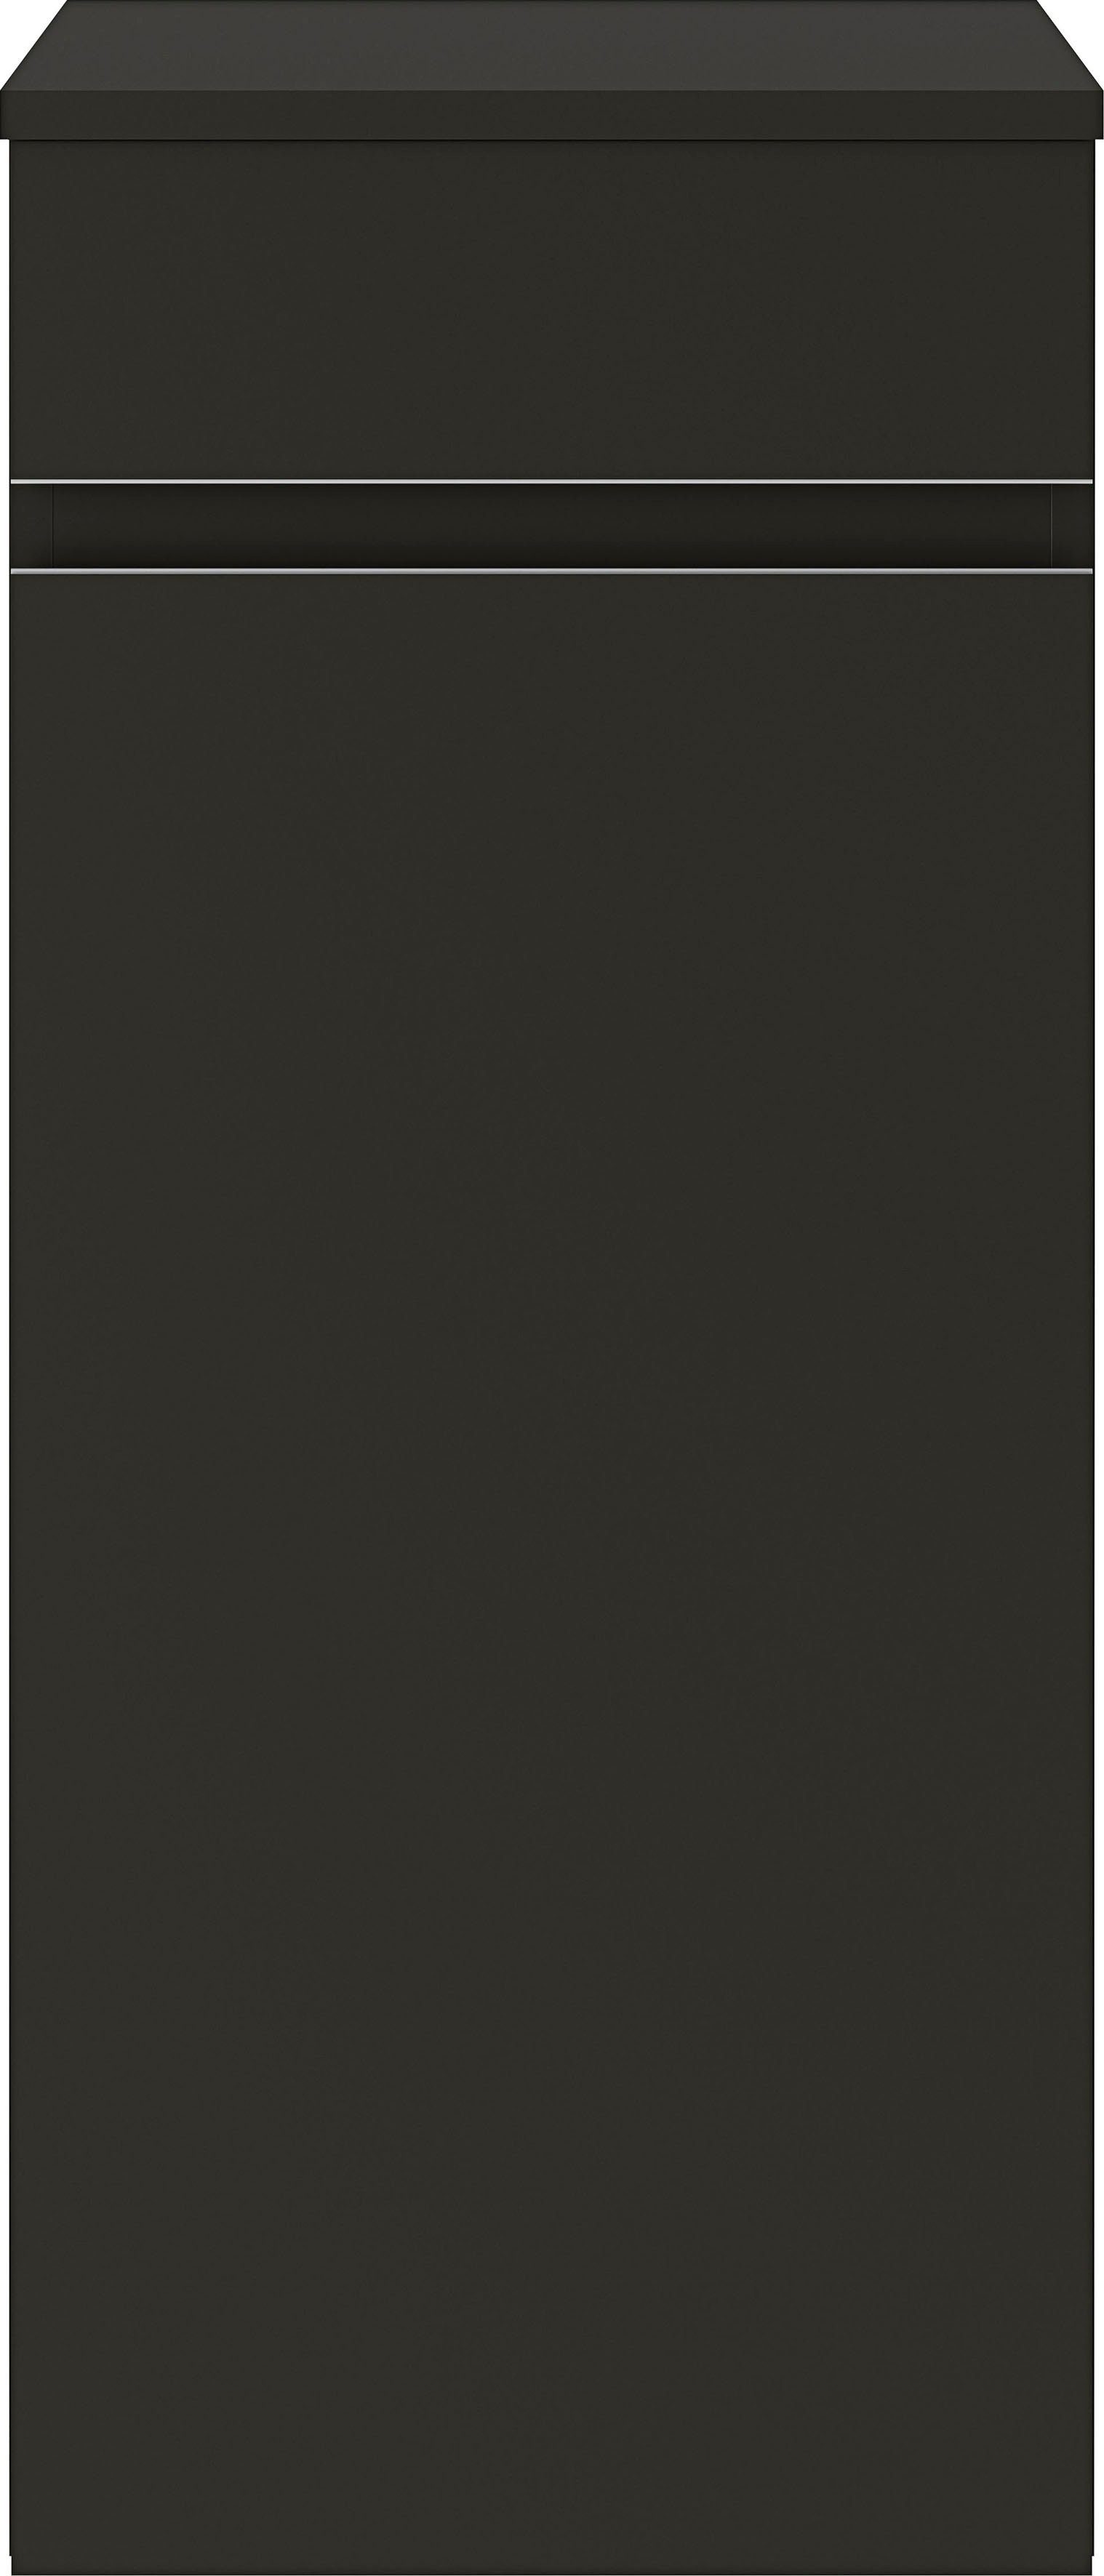 MARLIN Midischrank schwarz supermatt schwarz supermatt 